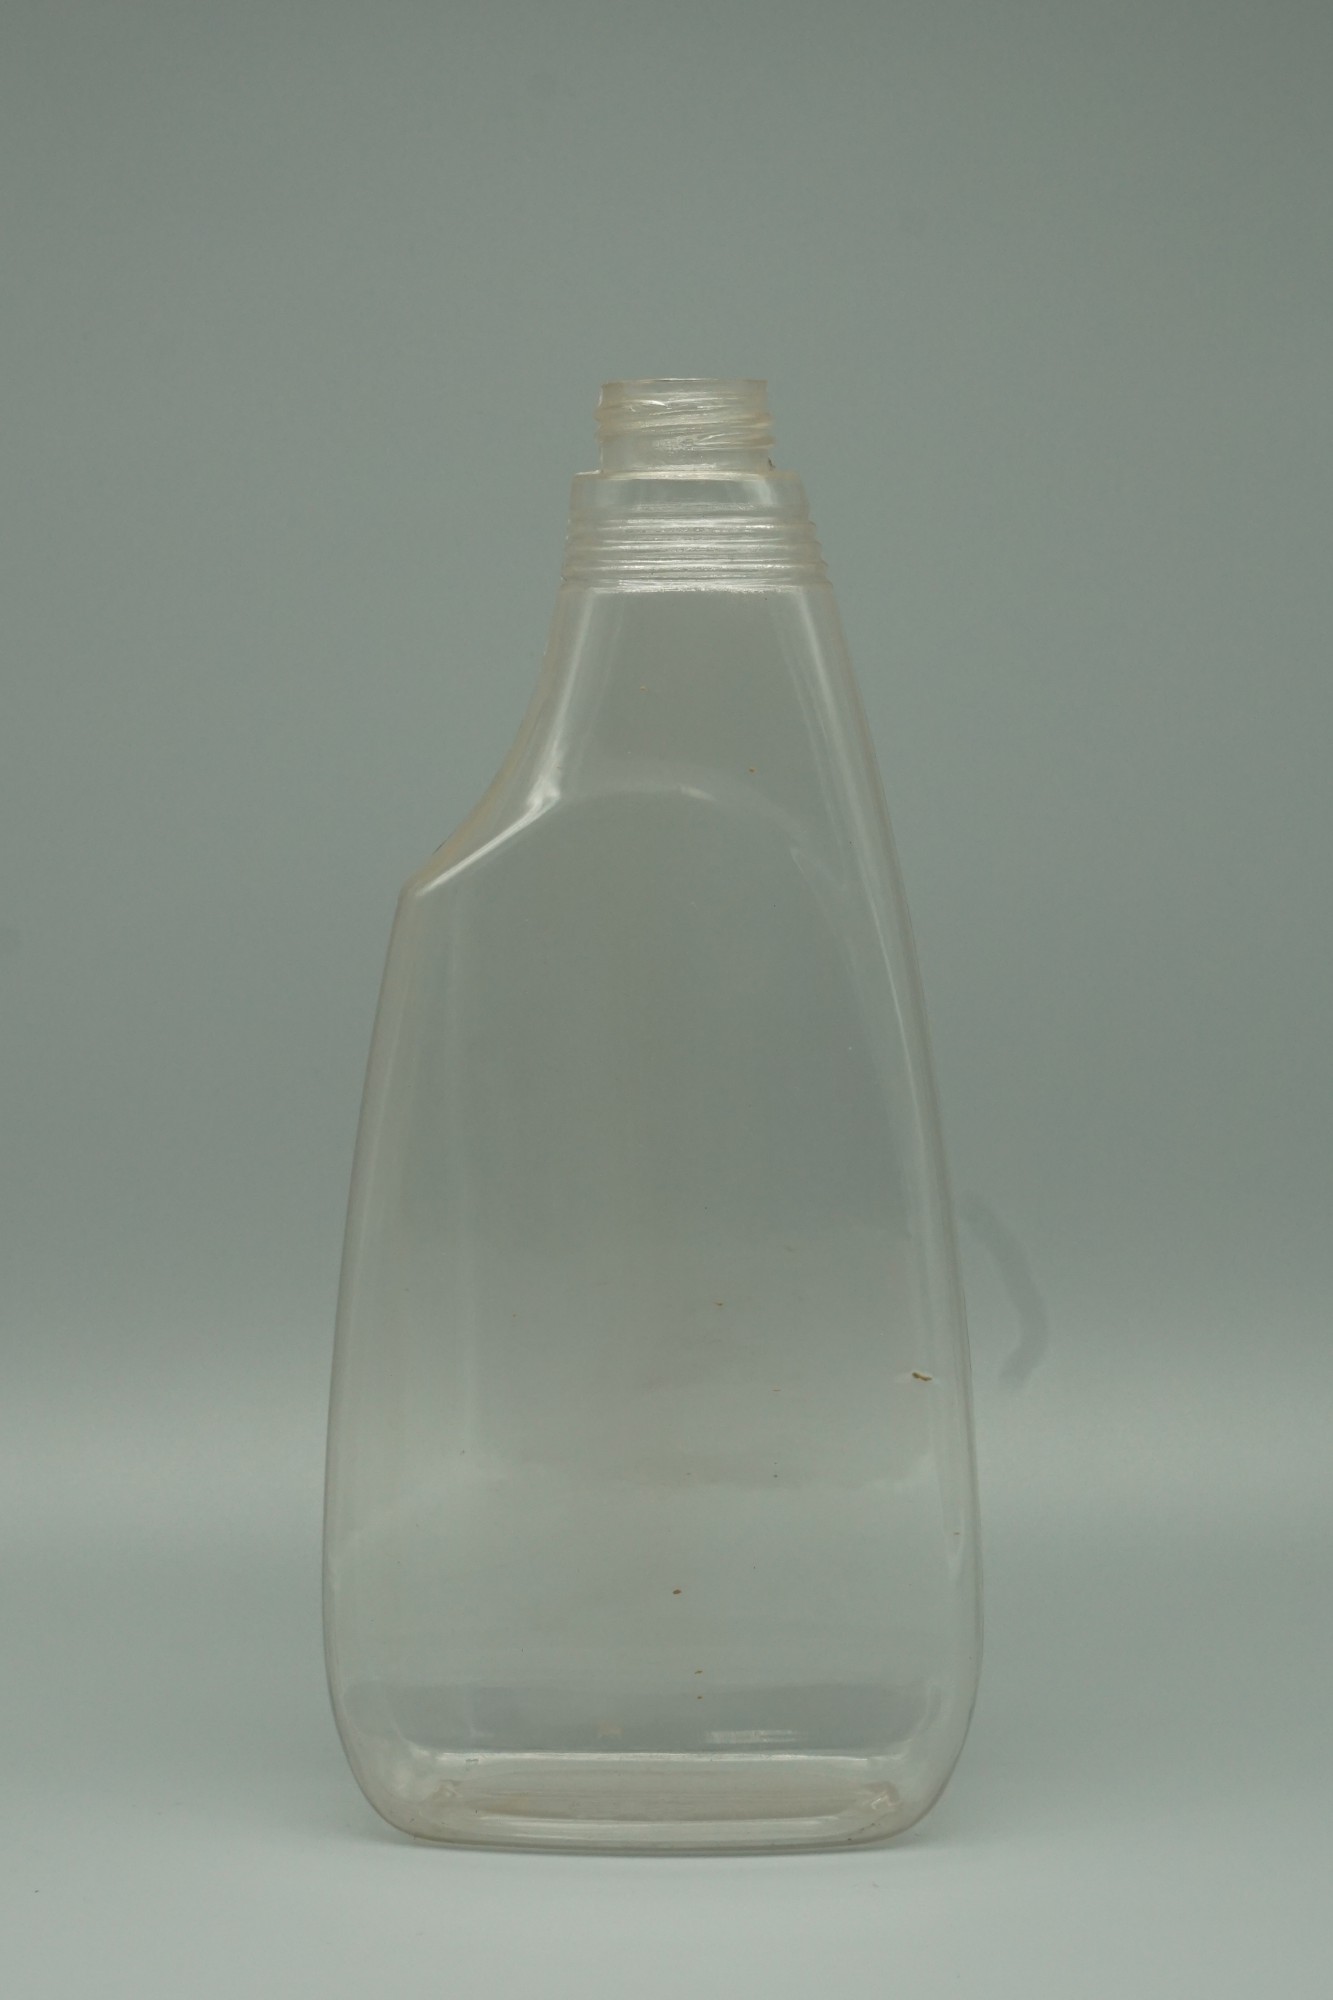 清潔瓶(500mL)(HC002_500)